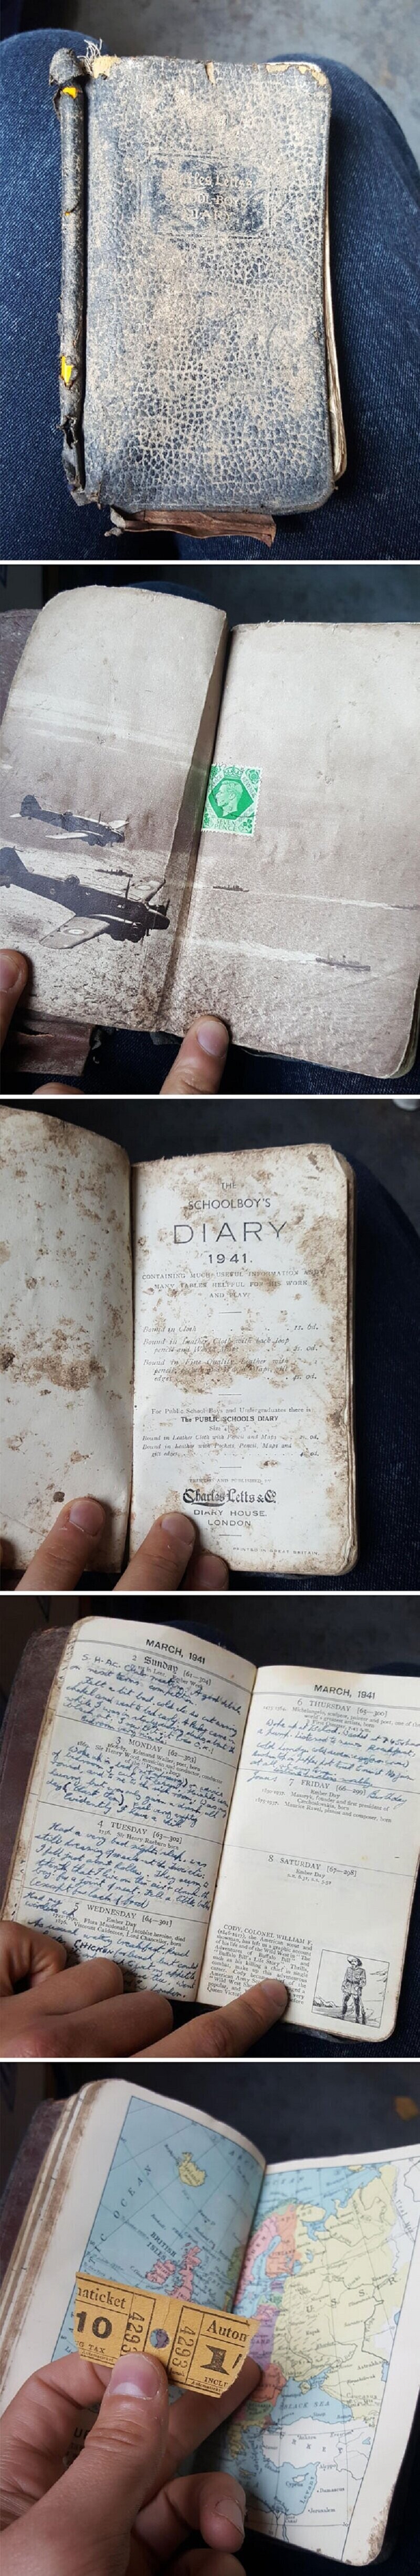 «Мой друг работает на переработке вторсырья. Недавно он нашел дневник школьника 1941 года!»